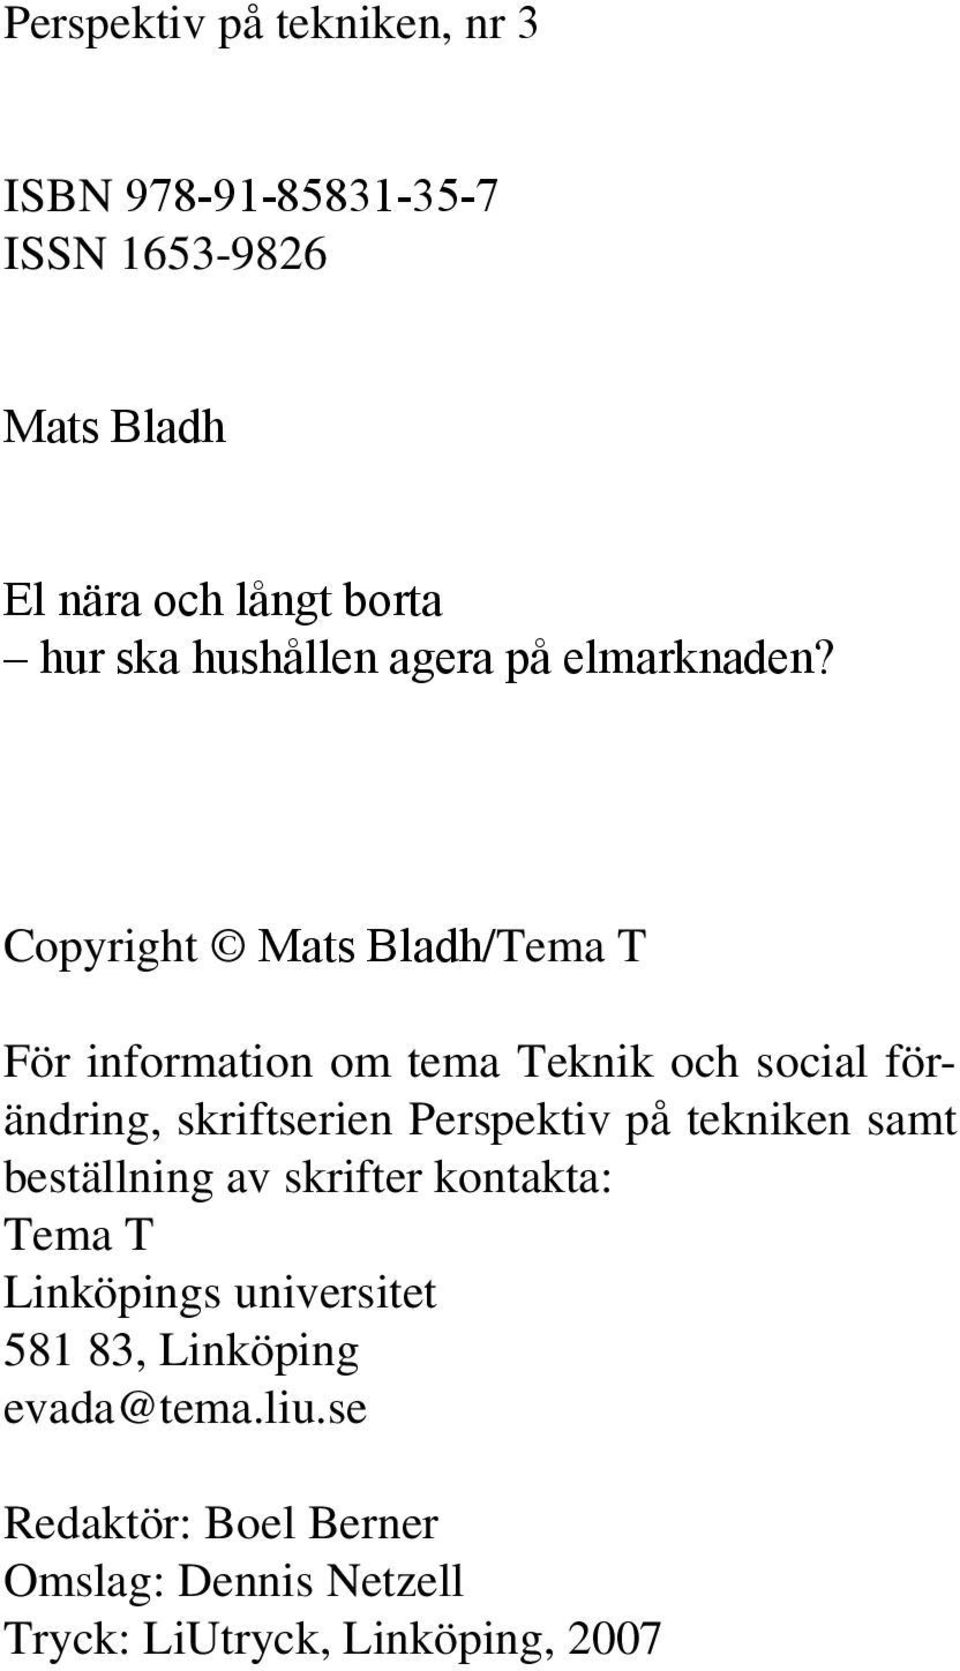 Copyright Mats Bladh/Tema T För information om tema Teknik och social förändring, skriftserien Perspektiv på